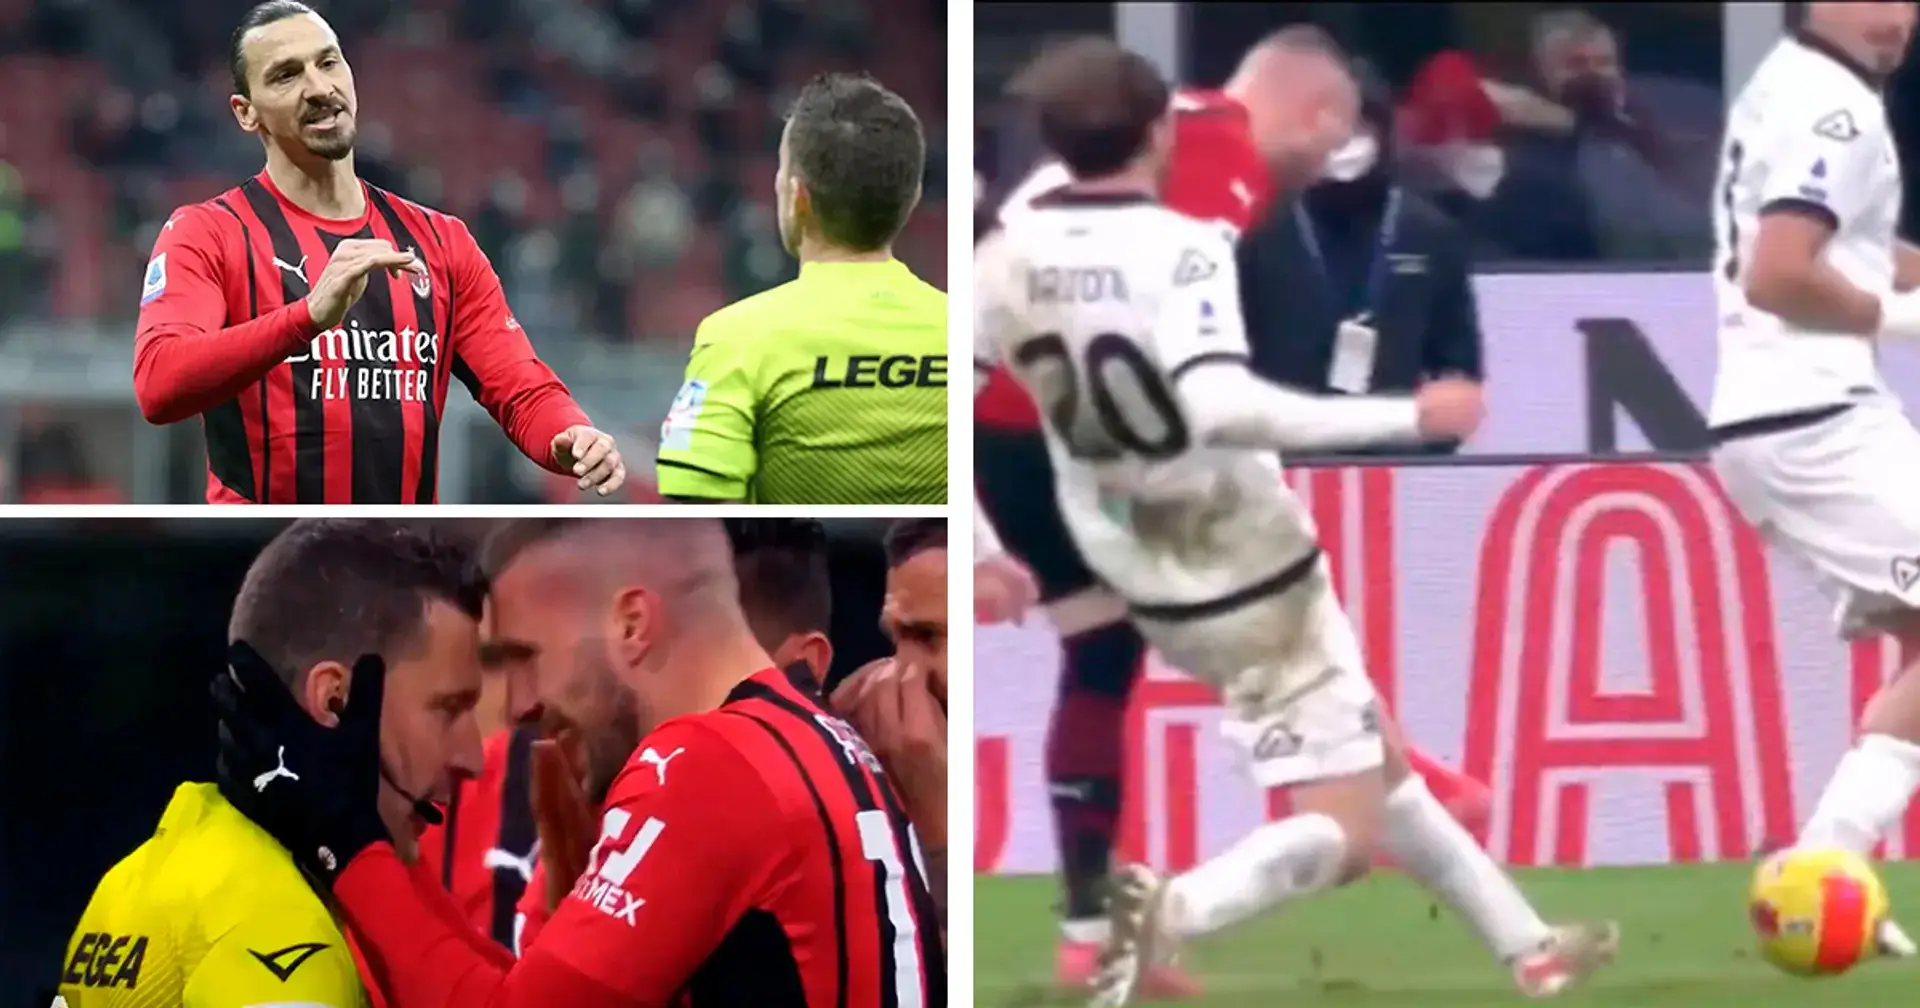 Un árbitro estalla en lágrimas por su fallo en la derrota del Milan e Ibrahimovic le consuela